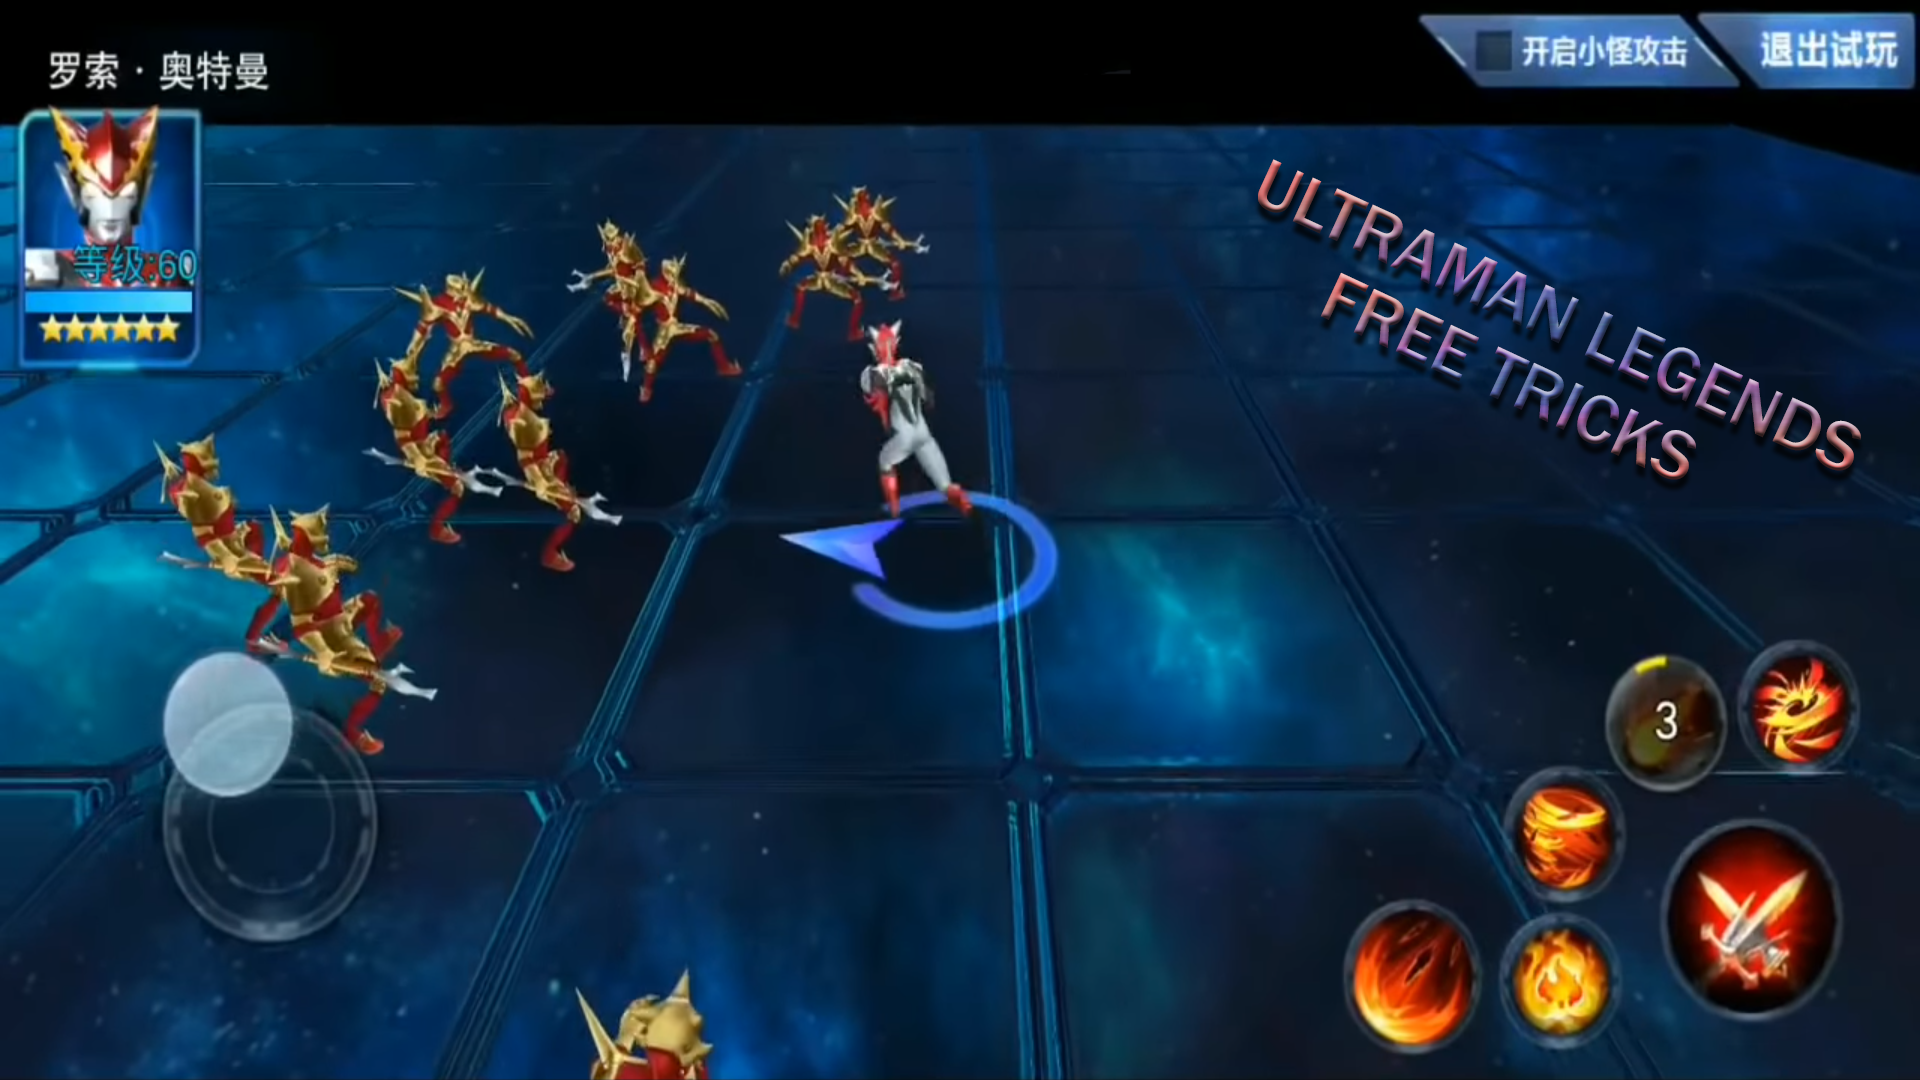 Screenshot 1 of Новый трюк Ultraman Legend of Heroes 